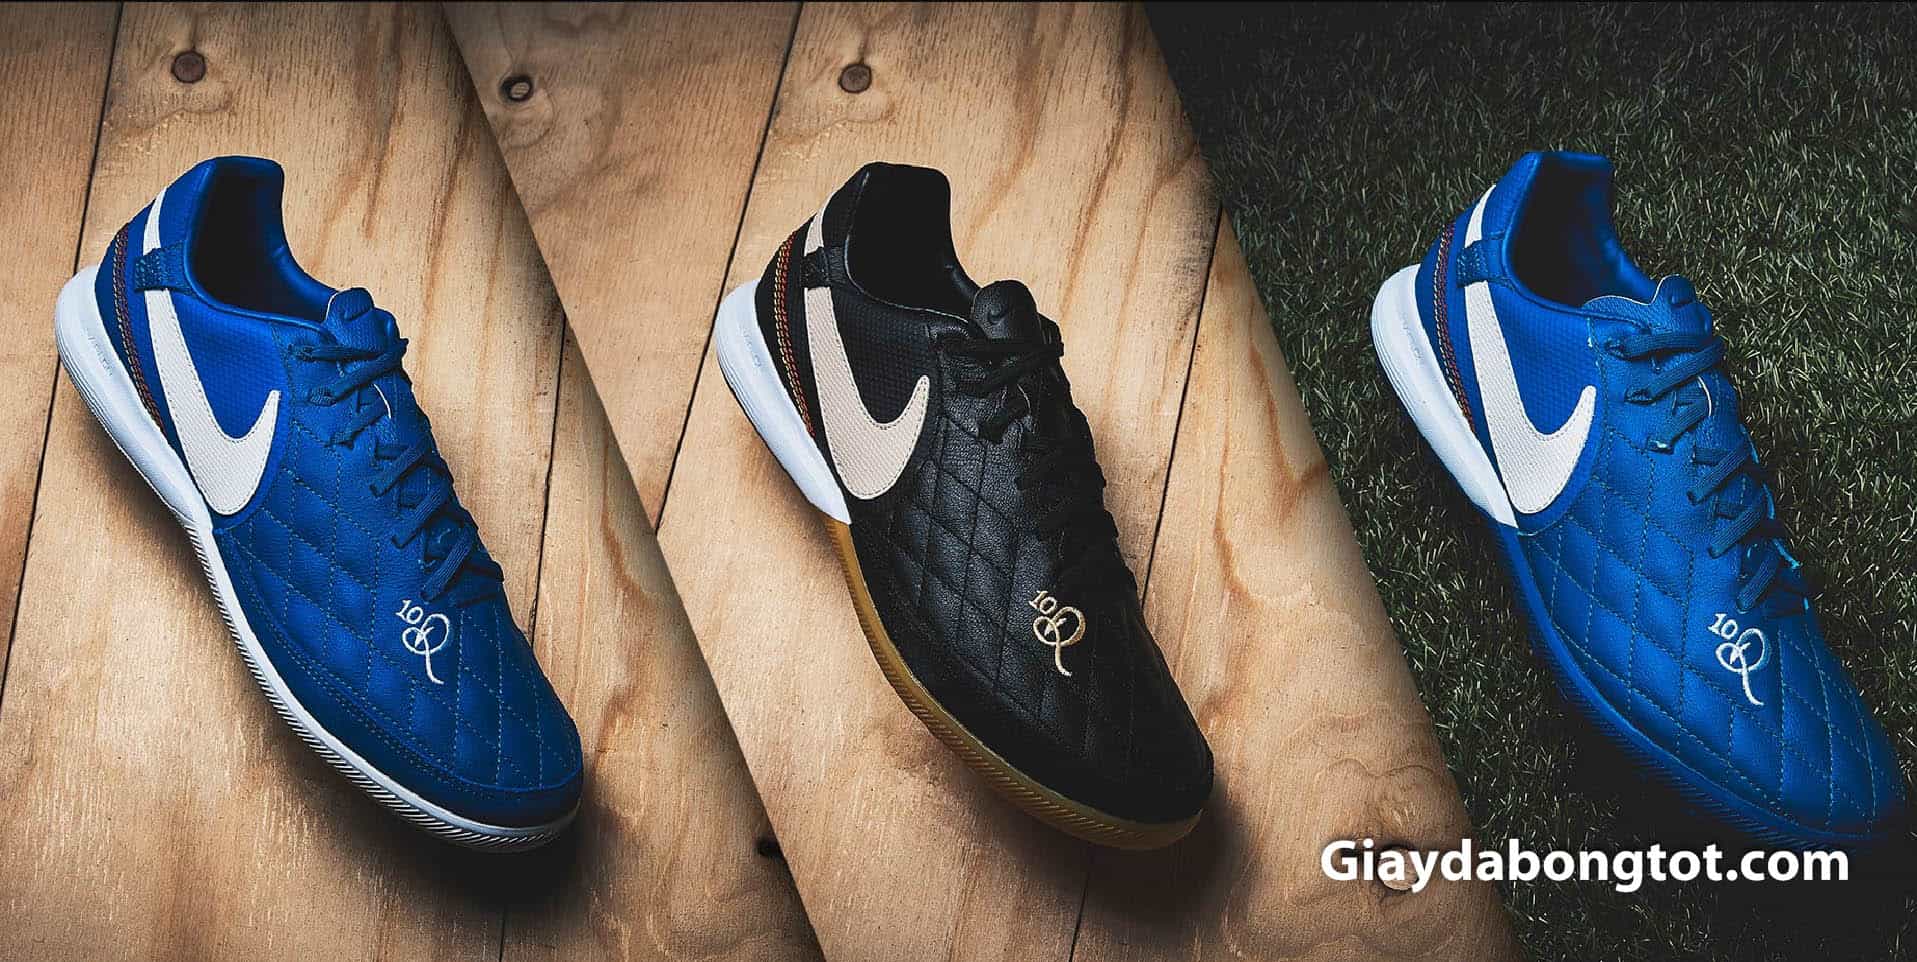 Giày Nike Tiempo Legend mang thương hiệu R10 của Ronaldinho đang chinh phục giới trẻ trên toàn thế giới